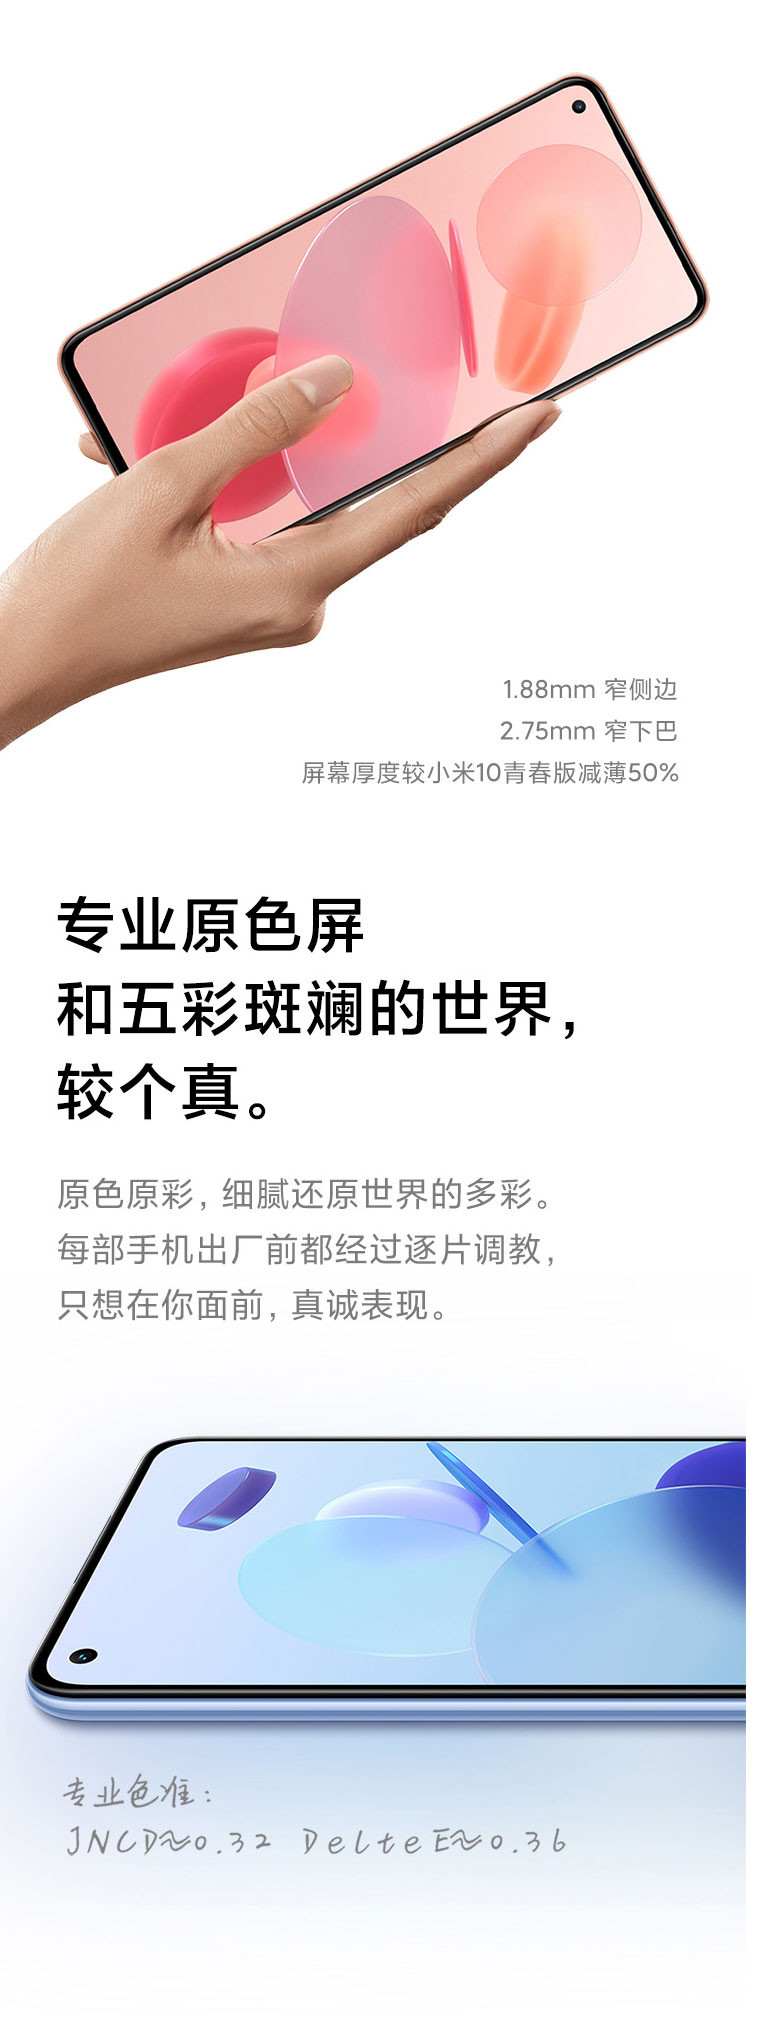 小米/MIUI 11青春版 骁龙780G处理器 AMOLED柔性直屏 5G时尚游戏手机